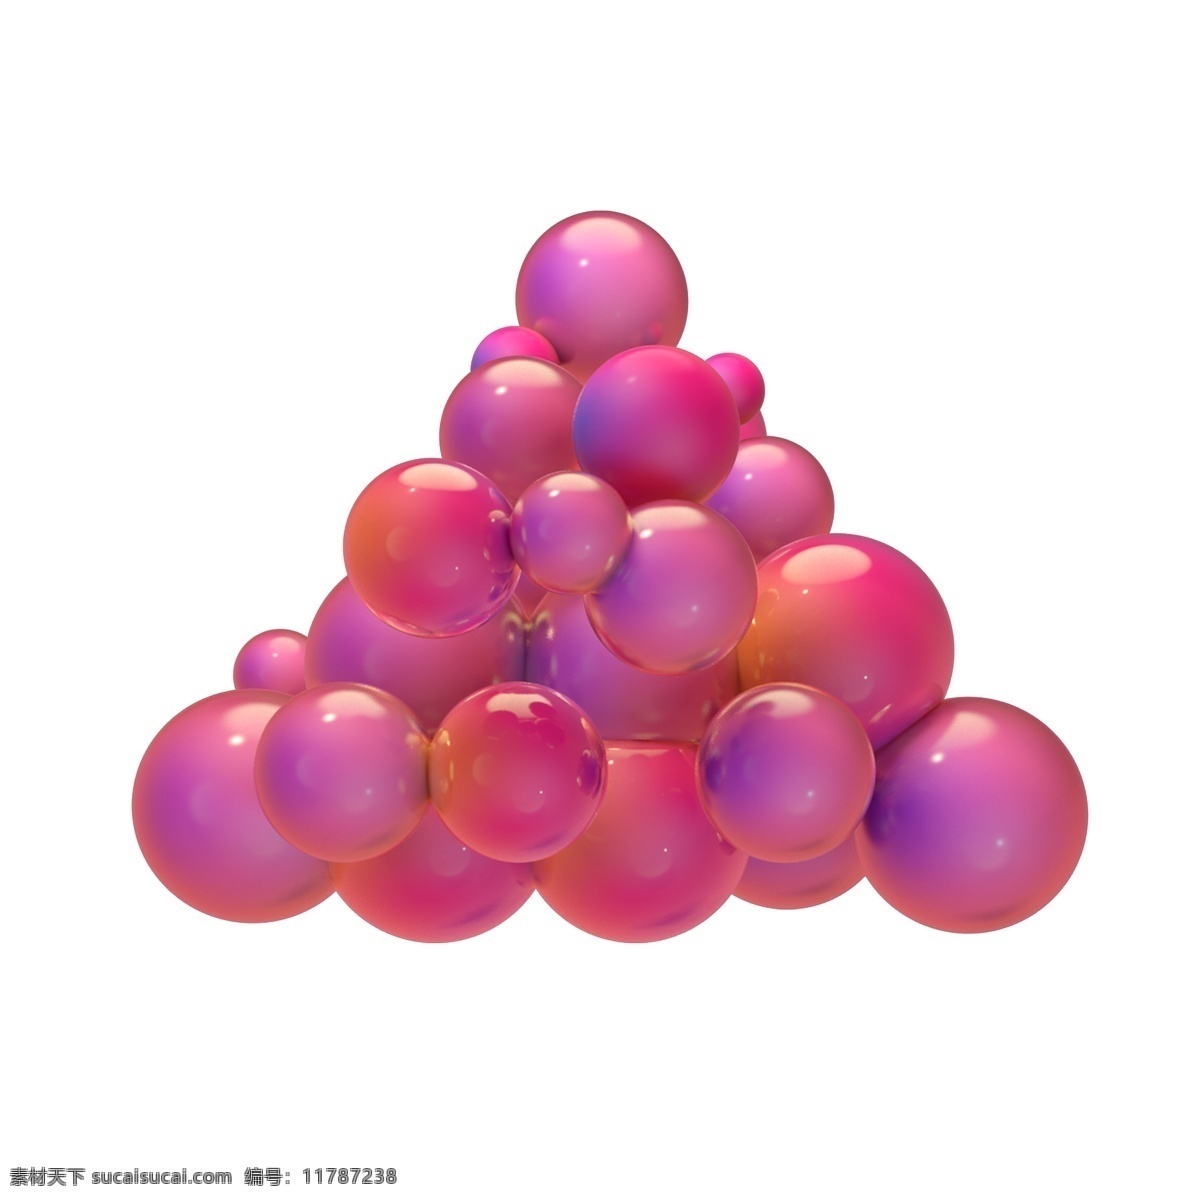 c4d 立体 圣诞节 粉色 炫彩 风格 装饰 元素 球 免扣png 粉色球 3d立体 海报装饰 圣诞球 漂浮